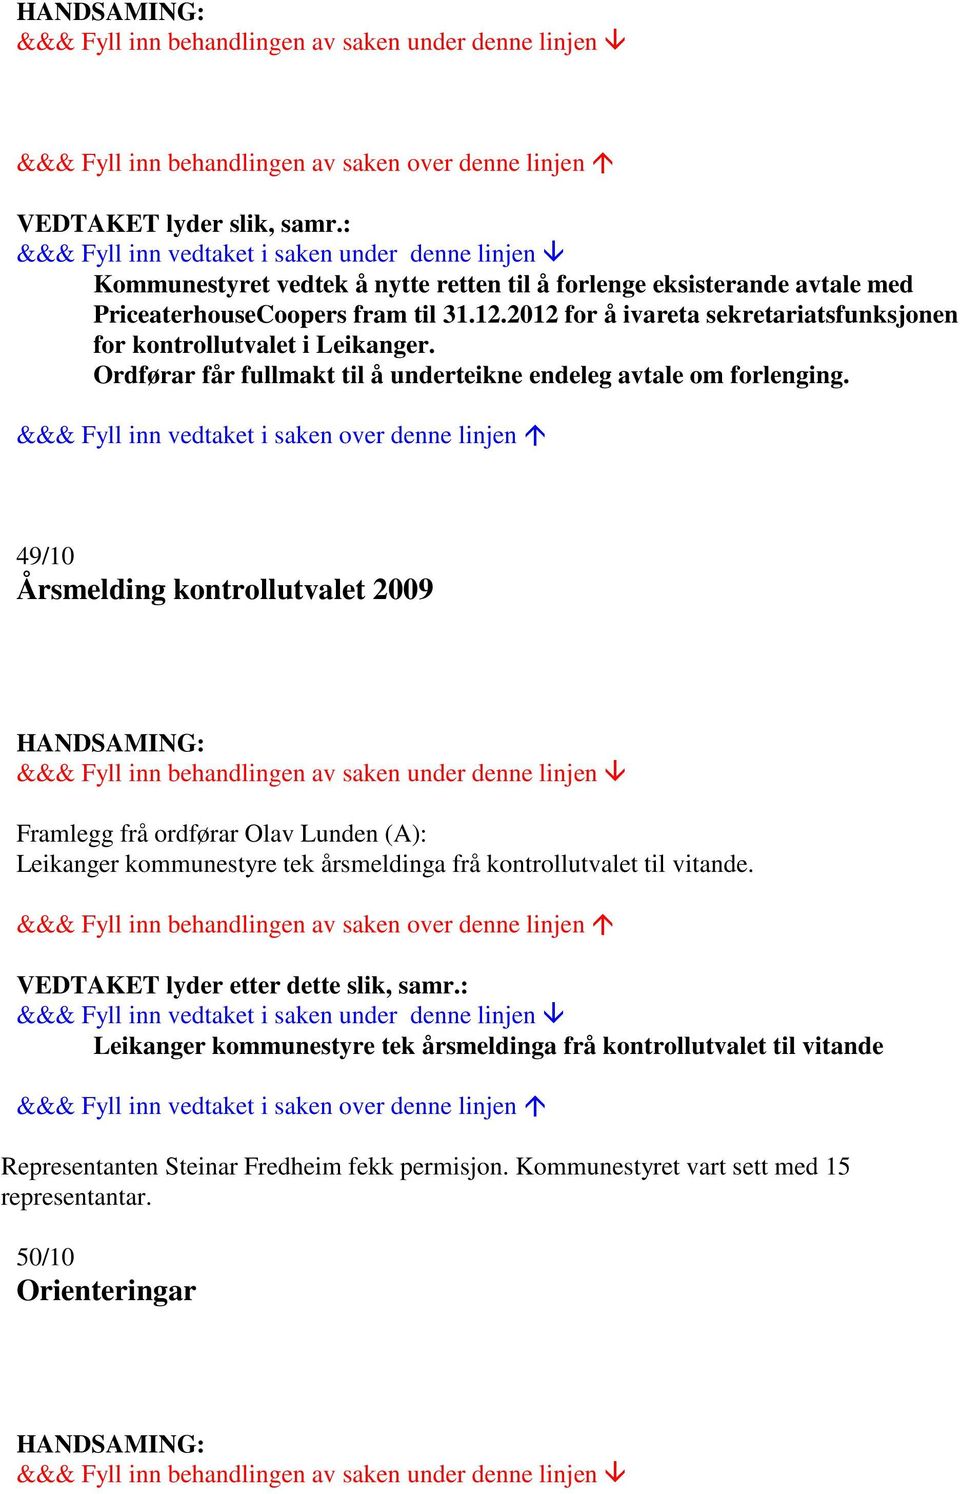 49/10 Årsmelding kontrollutvalet 2009 Framlegg frå ordførar Olav Lunden (A): Leikanger kommunestyre tek årsmeldinga frå kontrollutvalet til vitande.